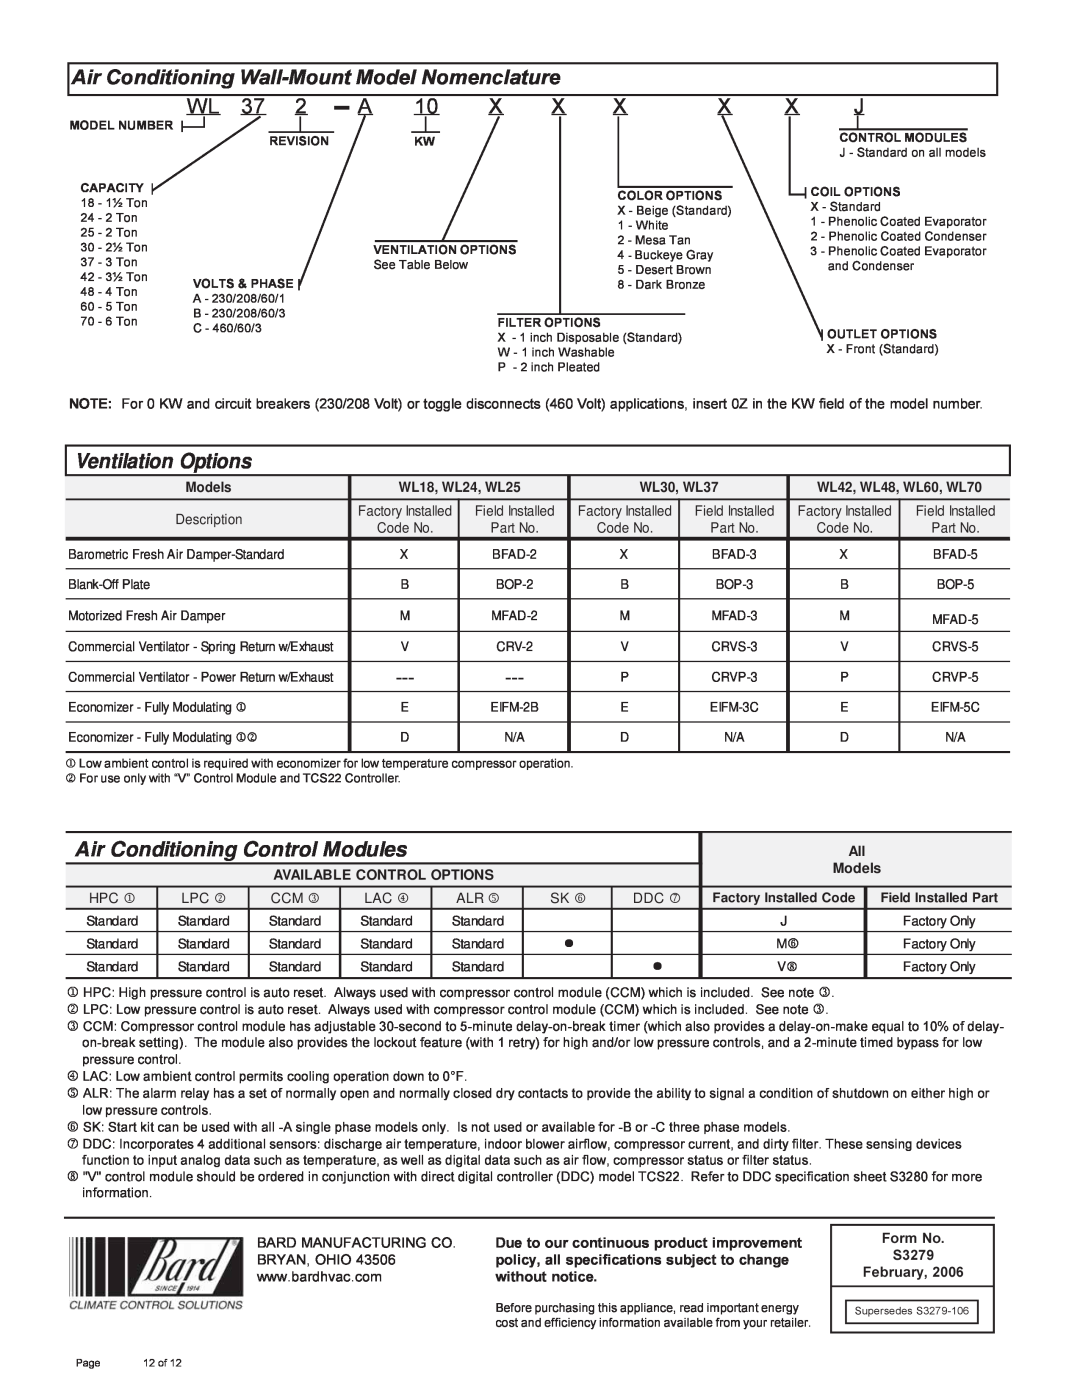 Bard 357-93-E manual Air Conditioning Wall-MountModel Nomenclature, Wl, Models, WL18, WL24, WL25, WL30, WL37 